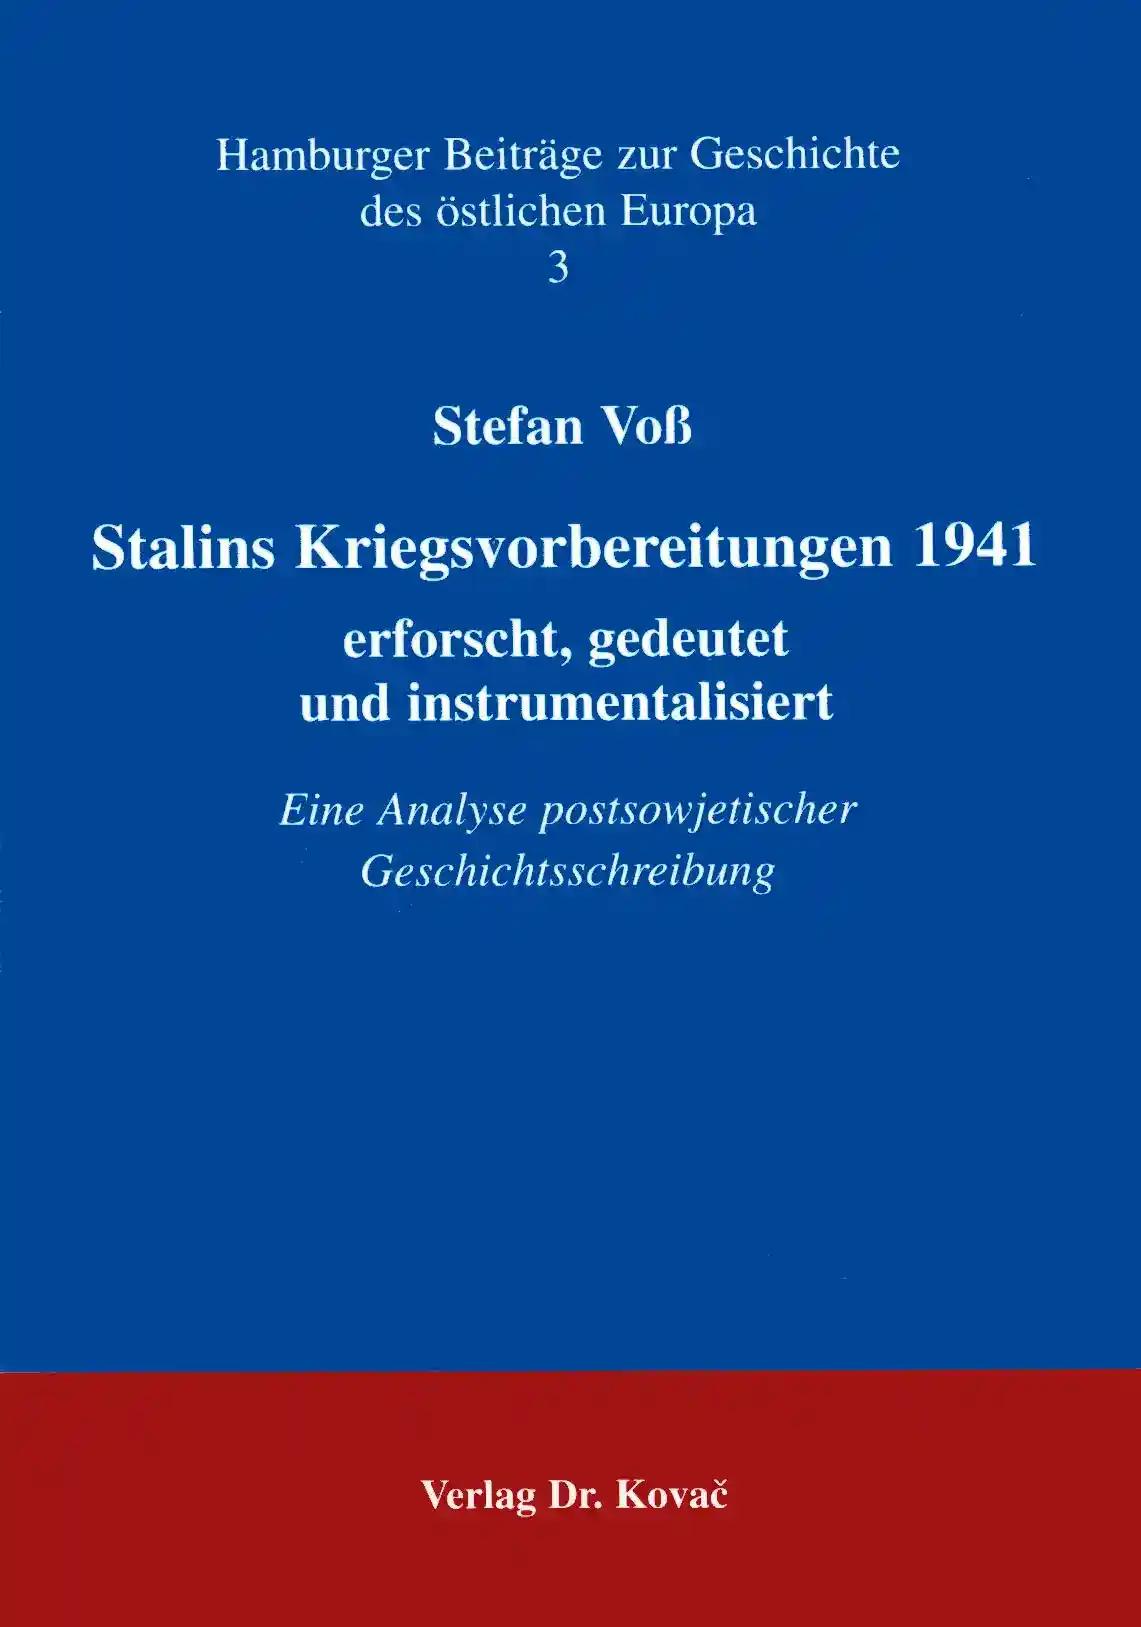 Stalins Kriegsvorbereitungen 1941 - erforscht, gedeutet und instrumentalisiert, Eine Analyse postsowjetischer Geschichtsschreibung - Stefan VoÃŸ